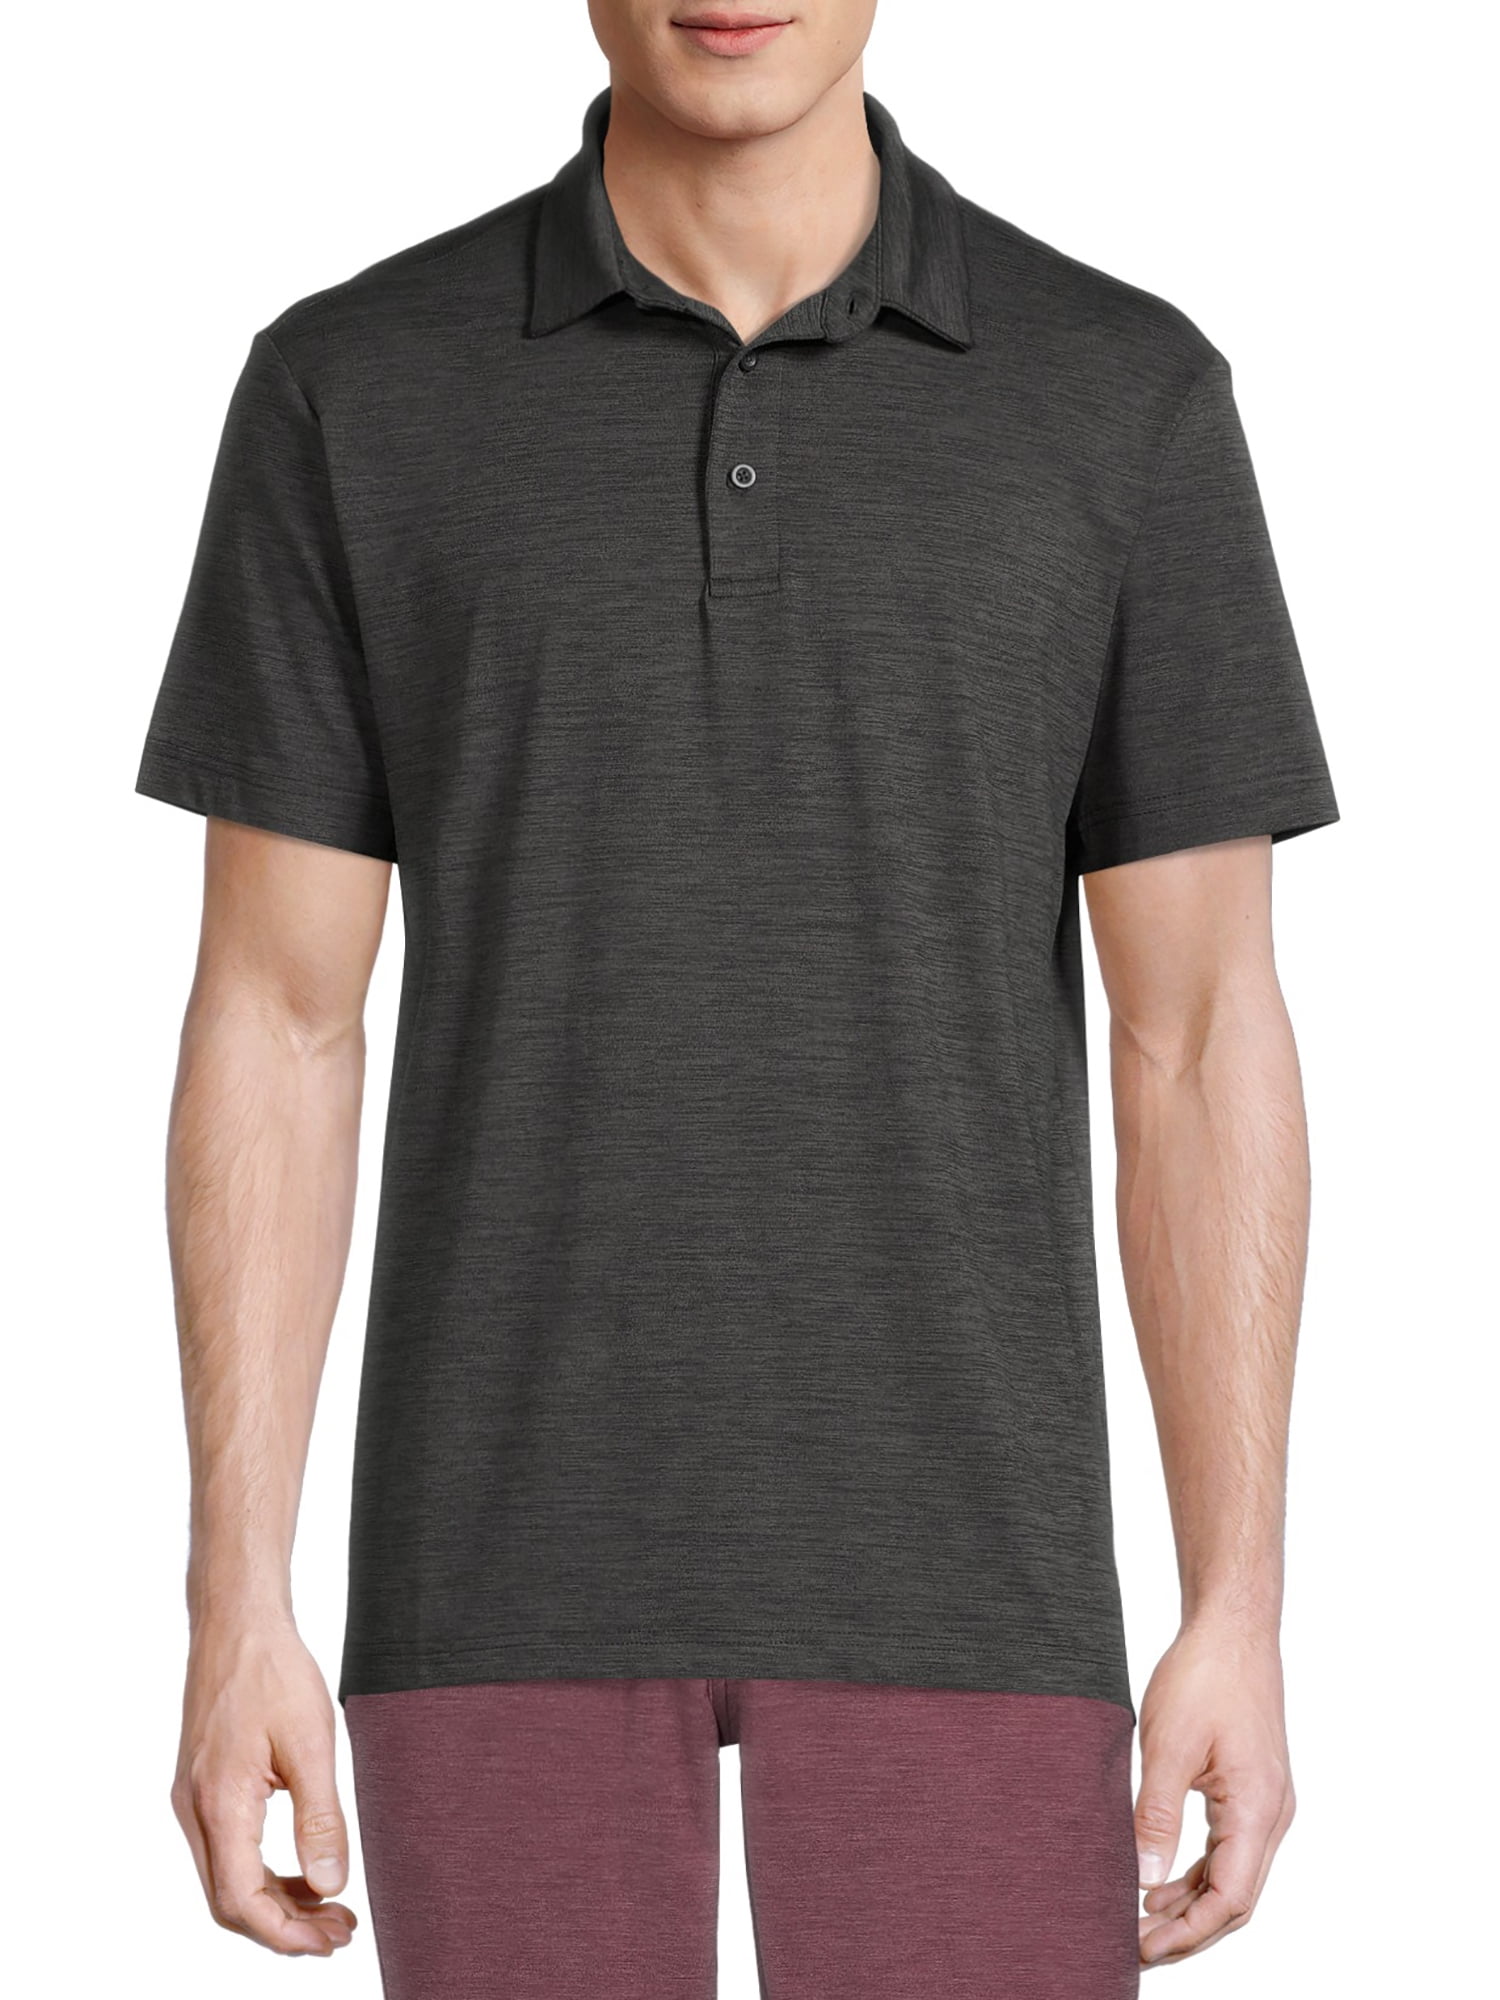 George Men's and Big Men's Polo Shirt - Walmart.com